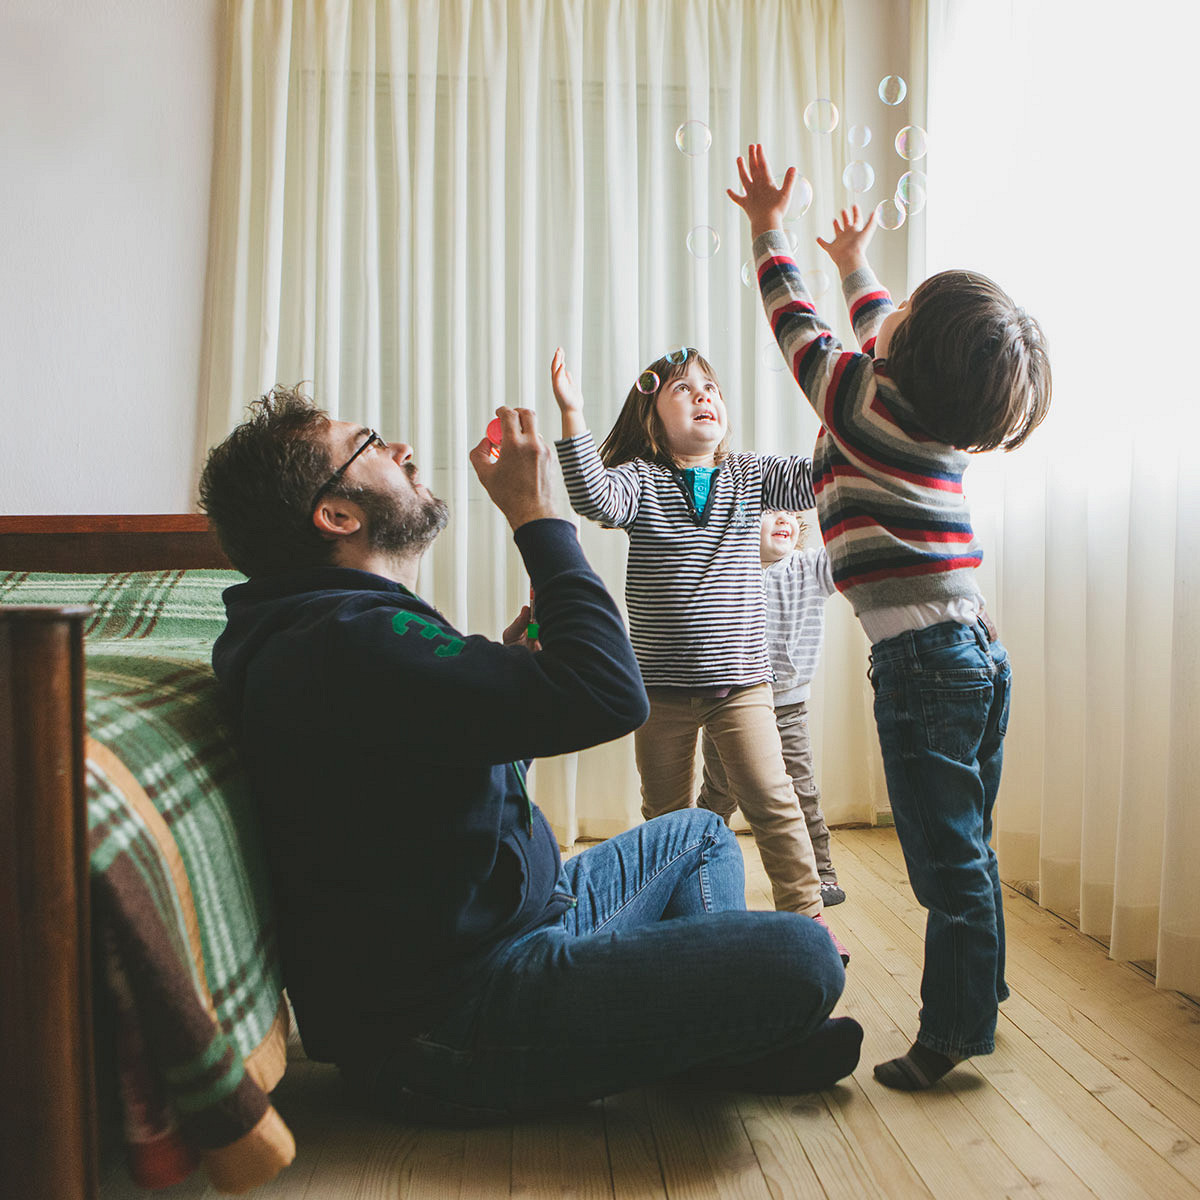 Заботливый отчим или чужой человек: должен ли новый муж матери заботиться о ее детях